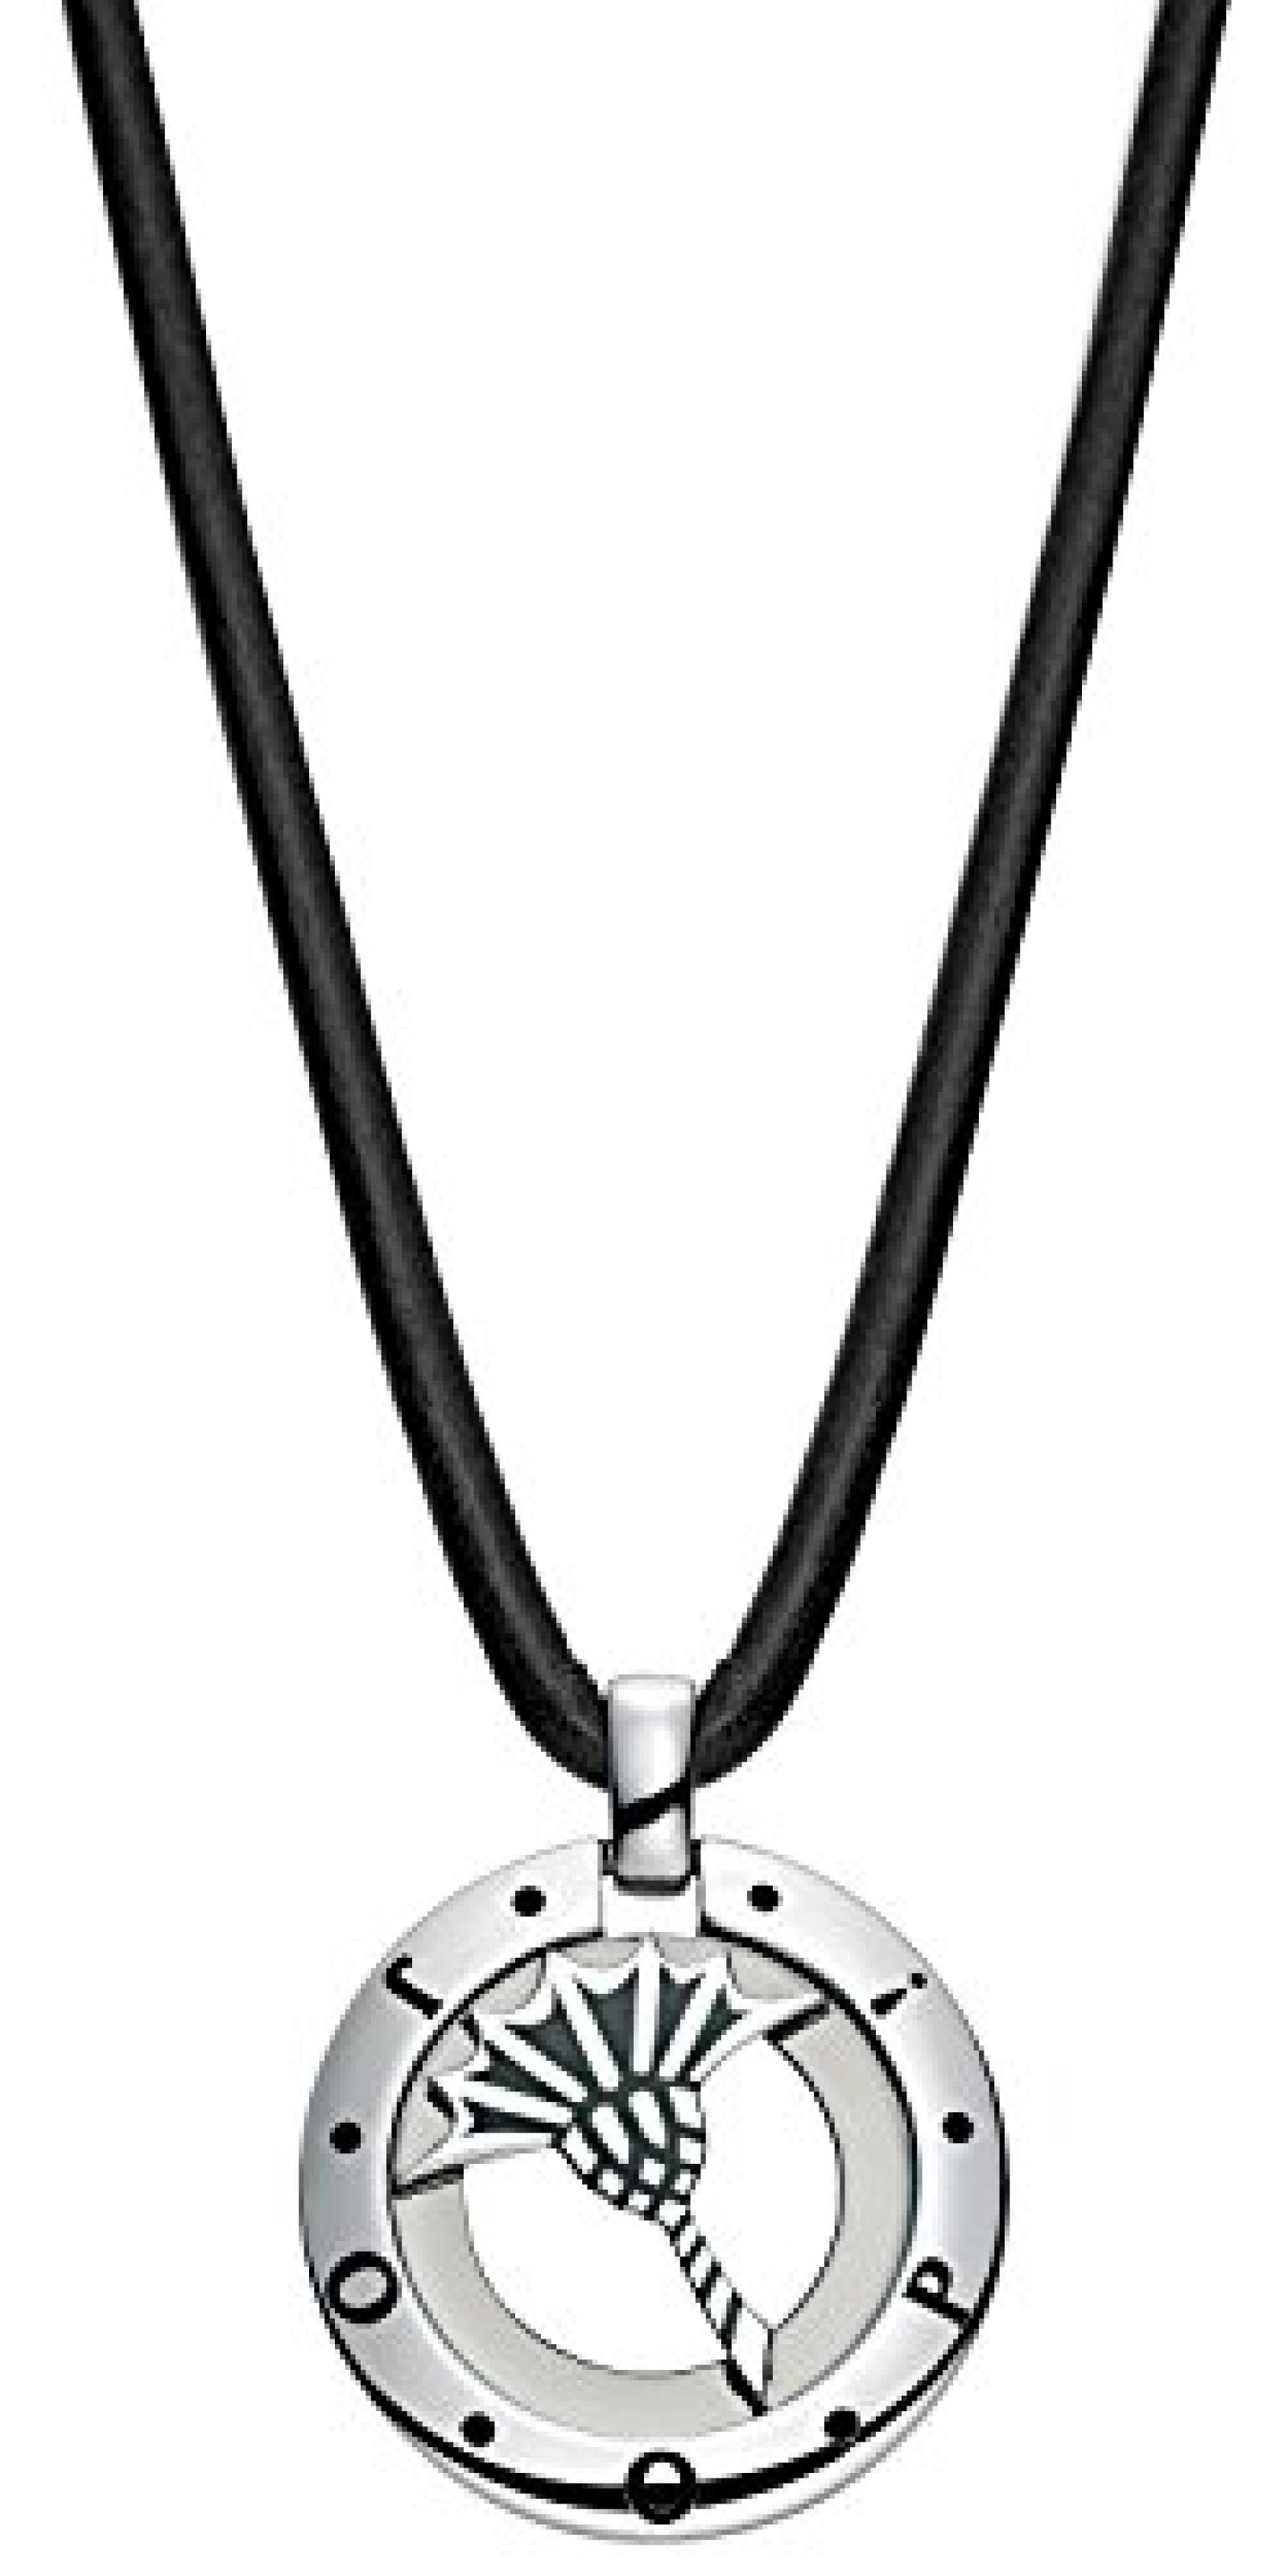 Joop! Damen-Halskette mit AnhÃ¤nger aus schwarzem Leder 925 Sterling Silber JPNL90306A500 